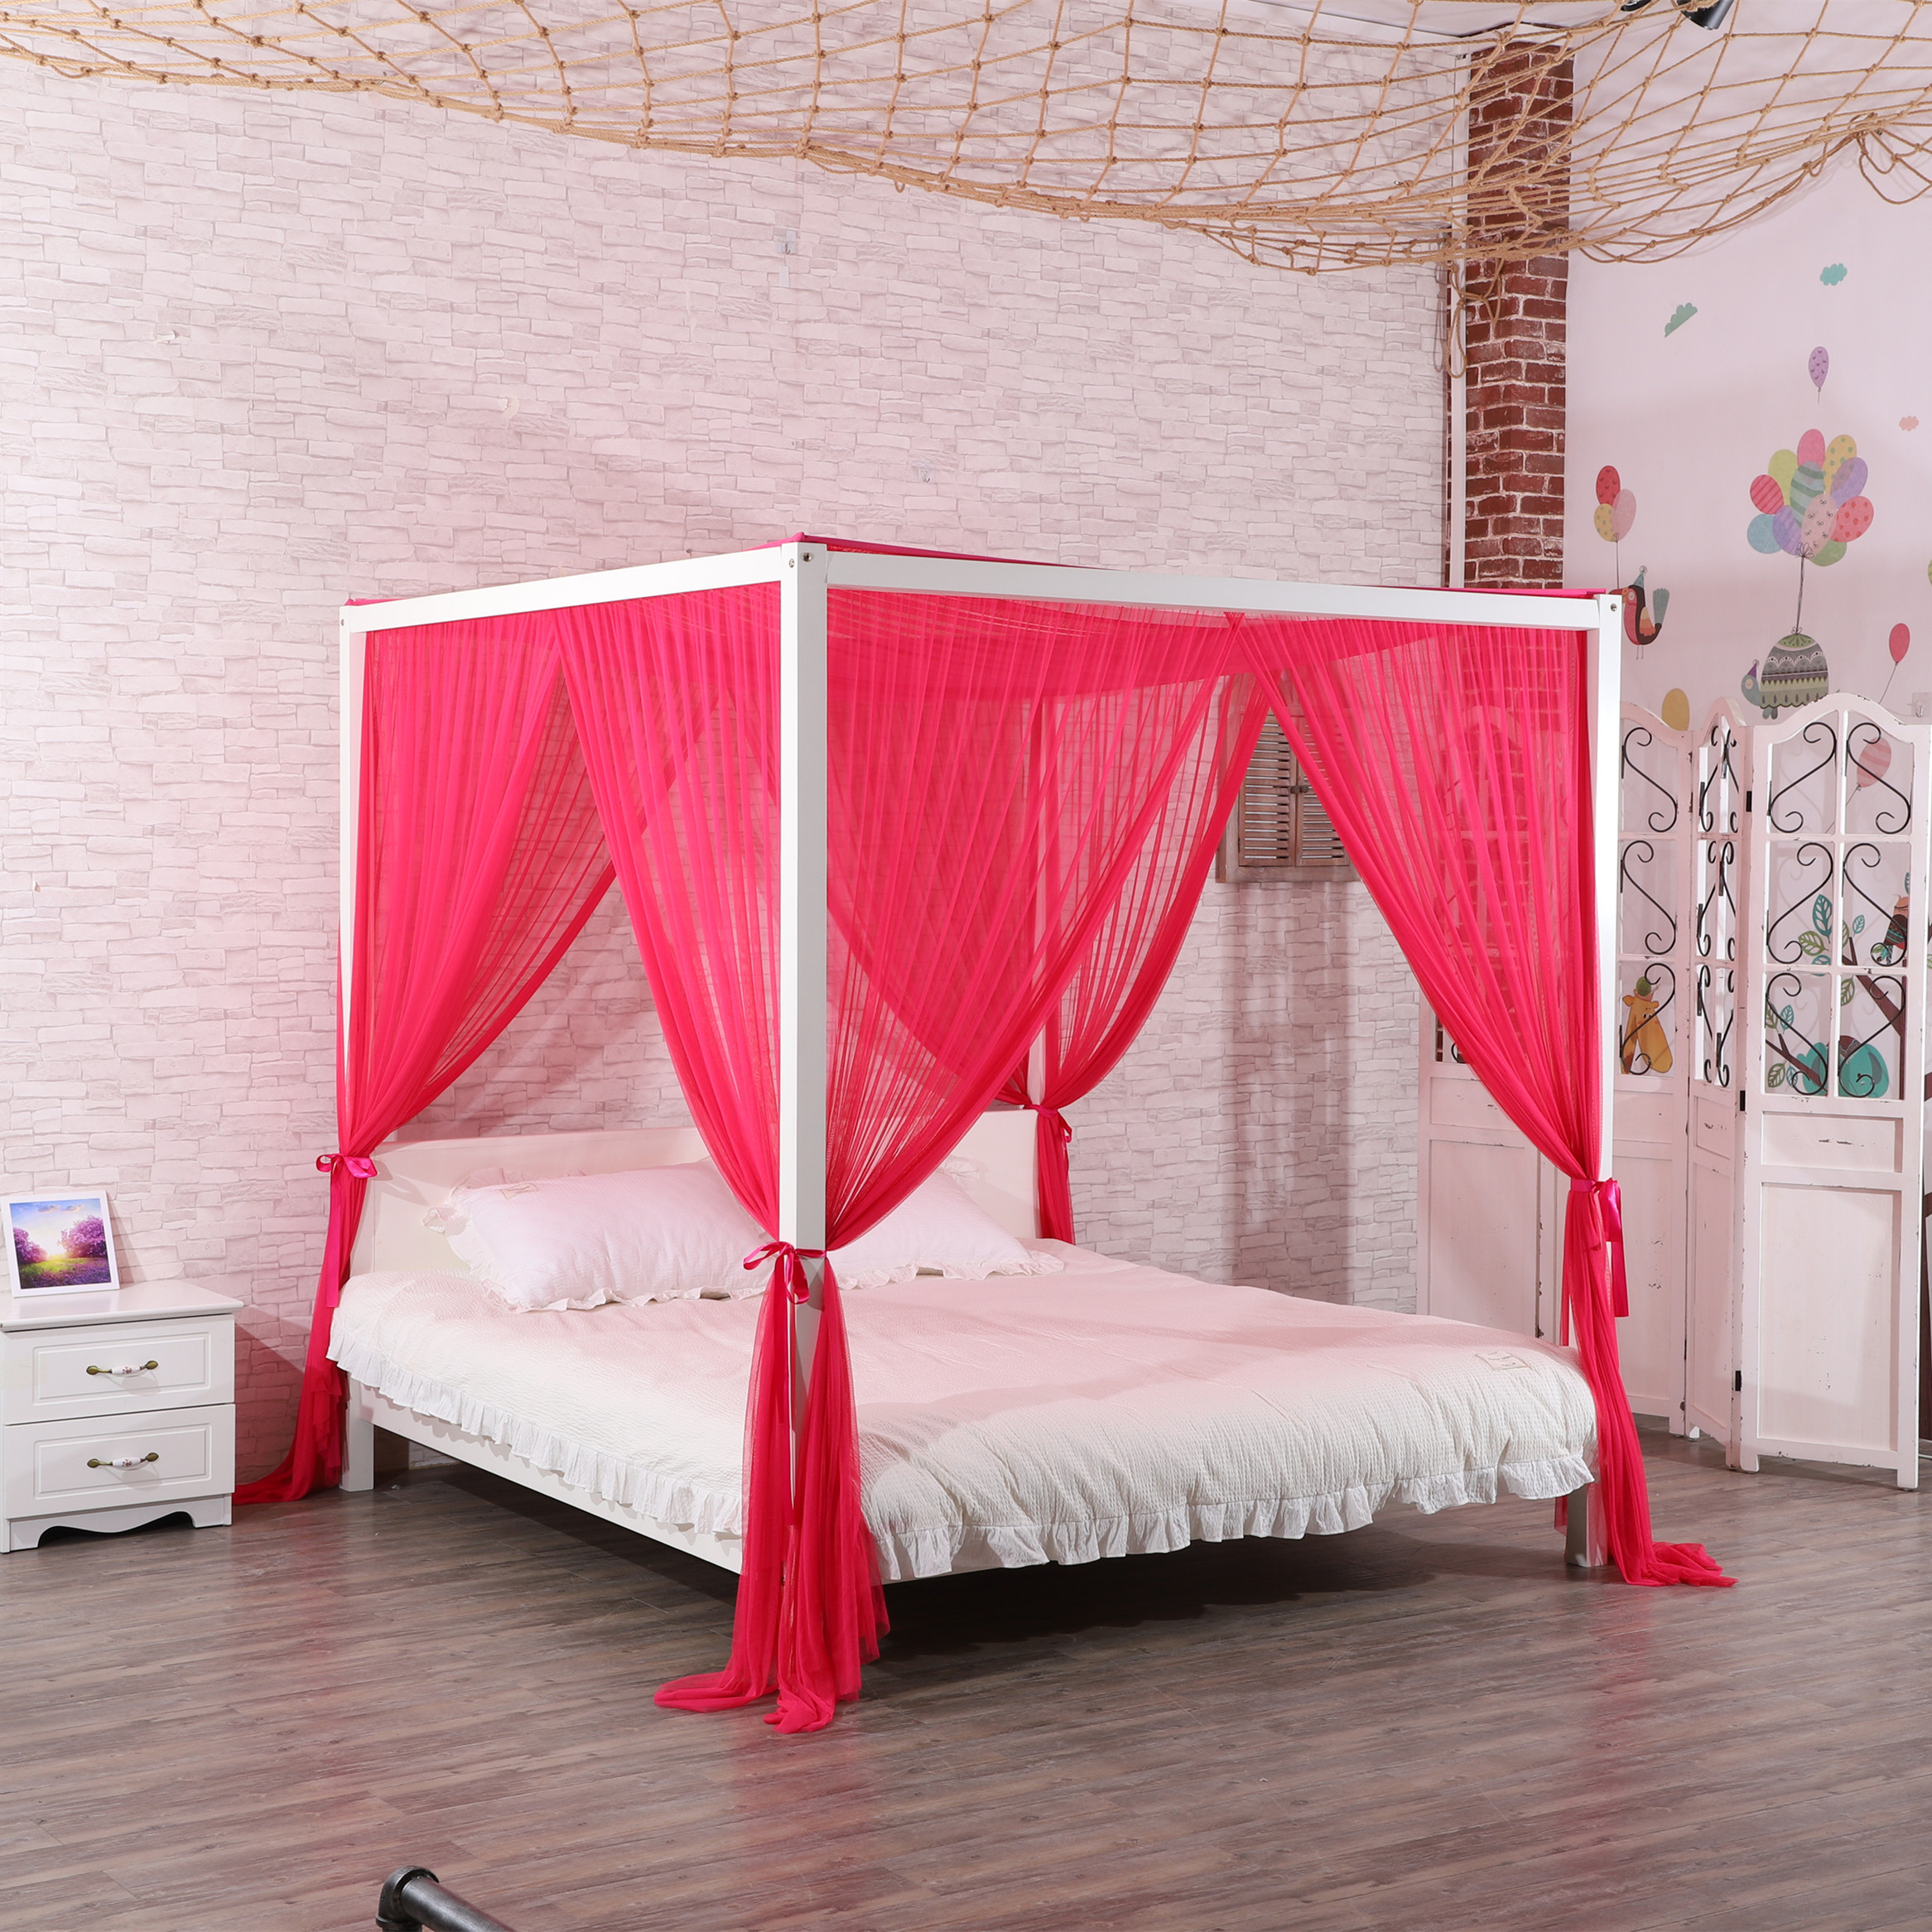 2020 nuevo estilo 100% poliéster de alta calidad forma Rectangular decoración del hogar red de cama doble mosquitera de tamaño King para cama